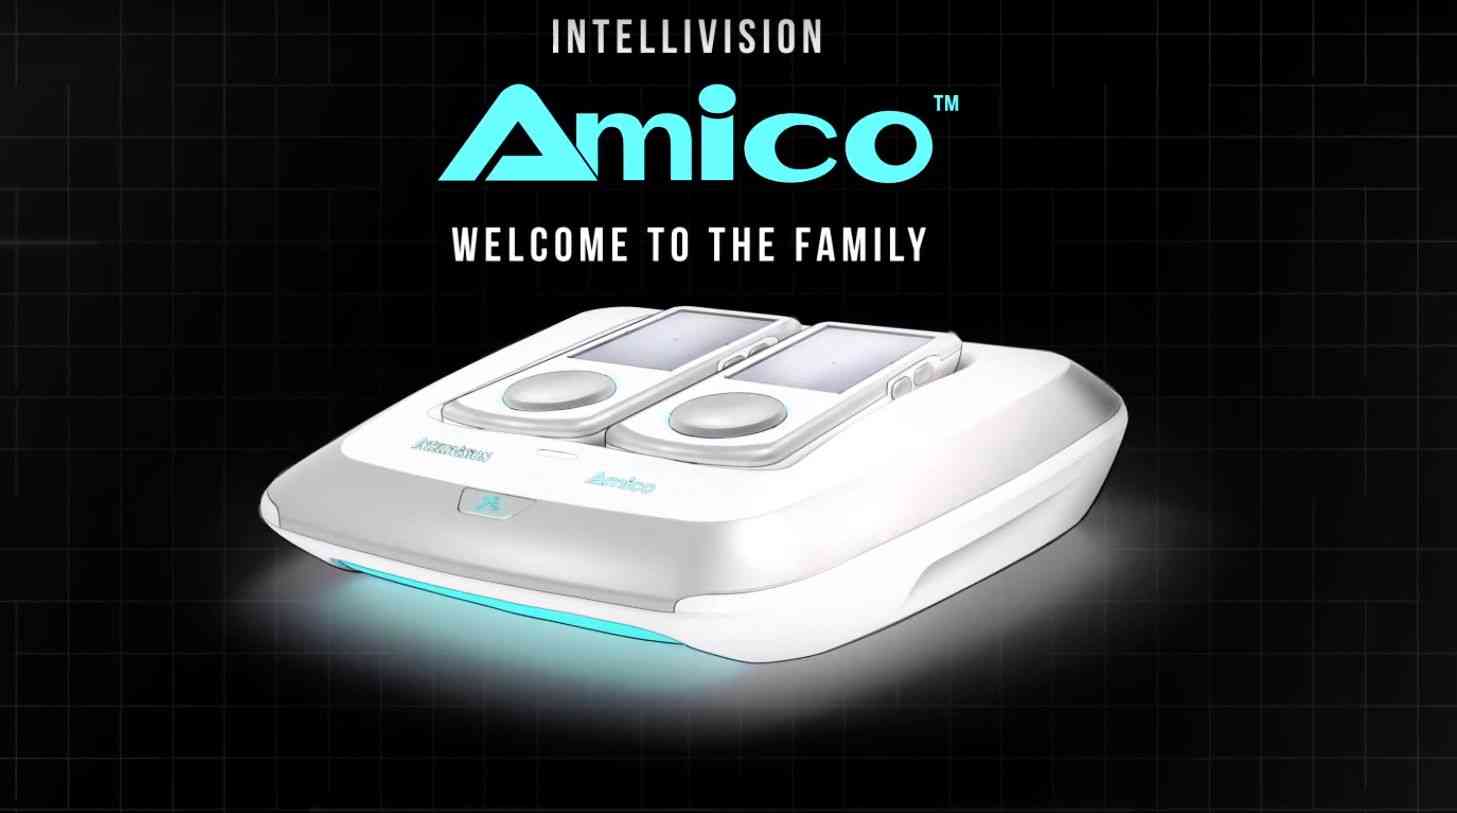 new game console intellivision amico revelead big 1